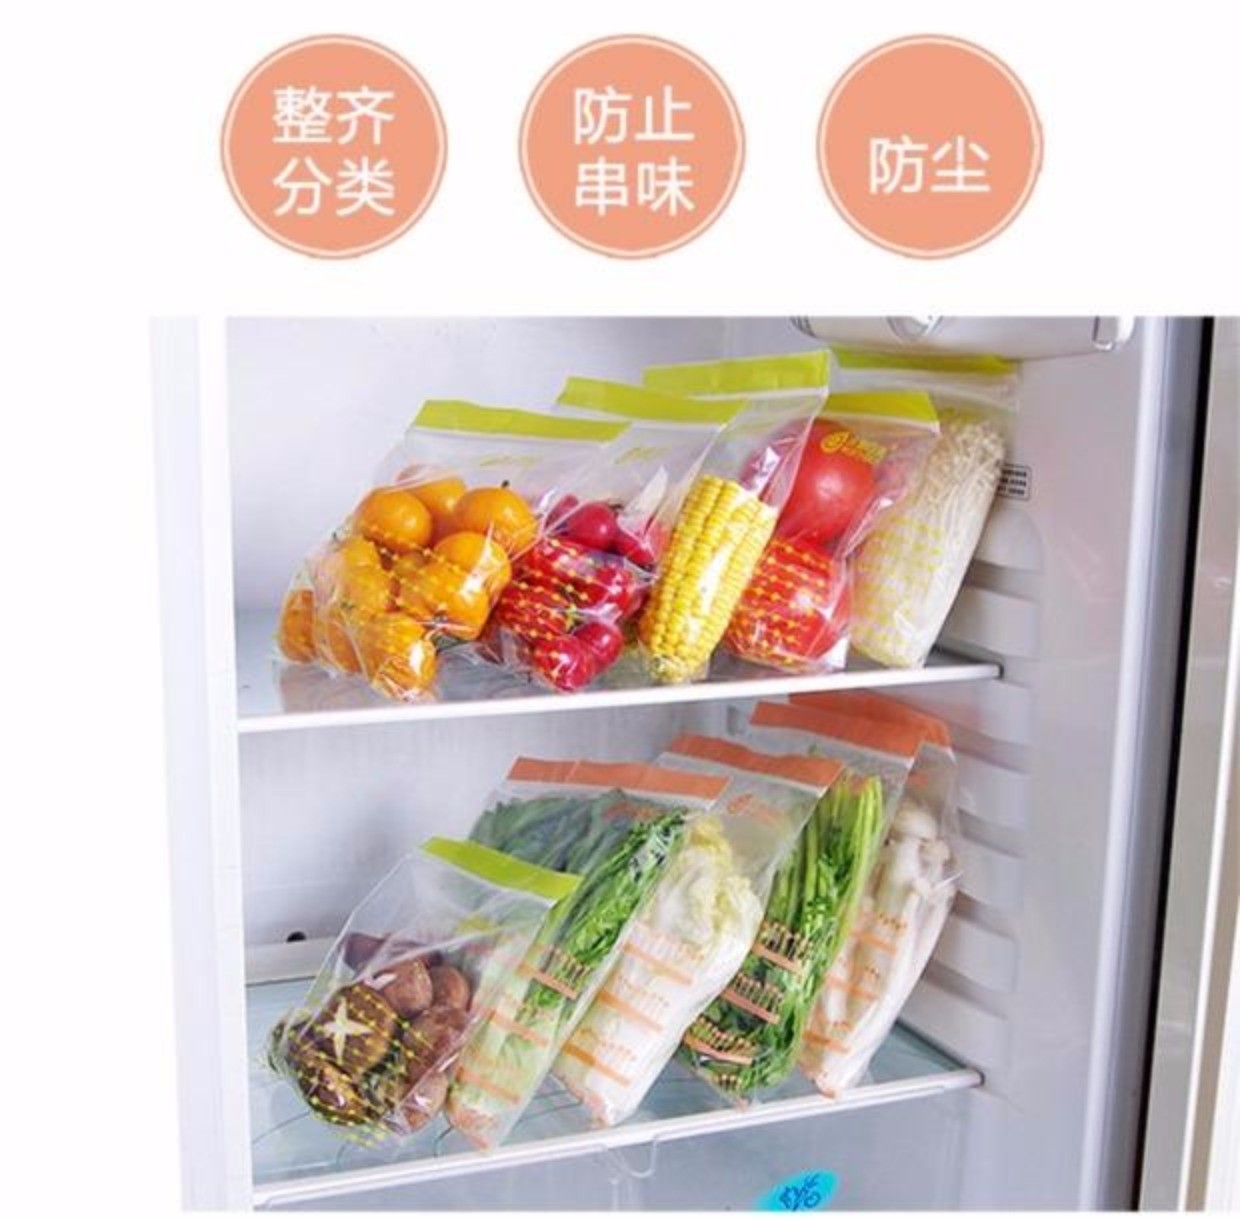 打开冰箱充满食物 库存图片. 图片 包括有 装载, 堵塞, 蔬菜, 冷冻机, 冷却, 鸡蛋, 内部, 果子 - 50944635